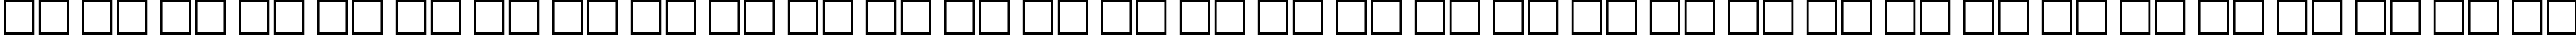 Пример написания русского алфавита шрифтом FleurDesign Dingbats